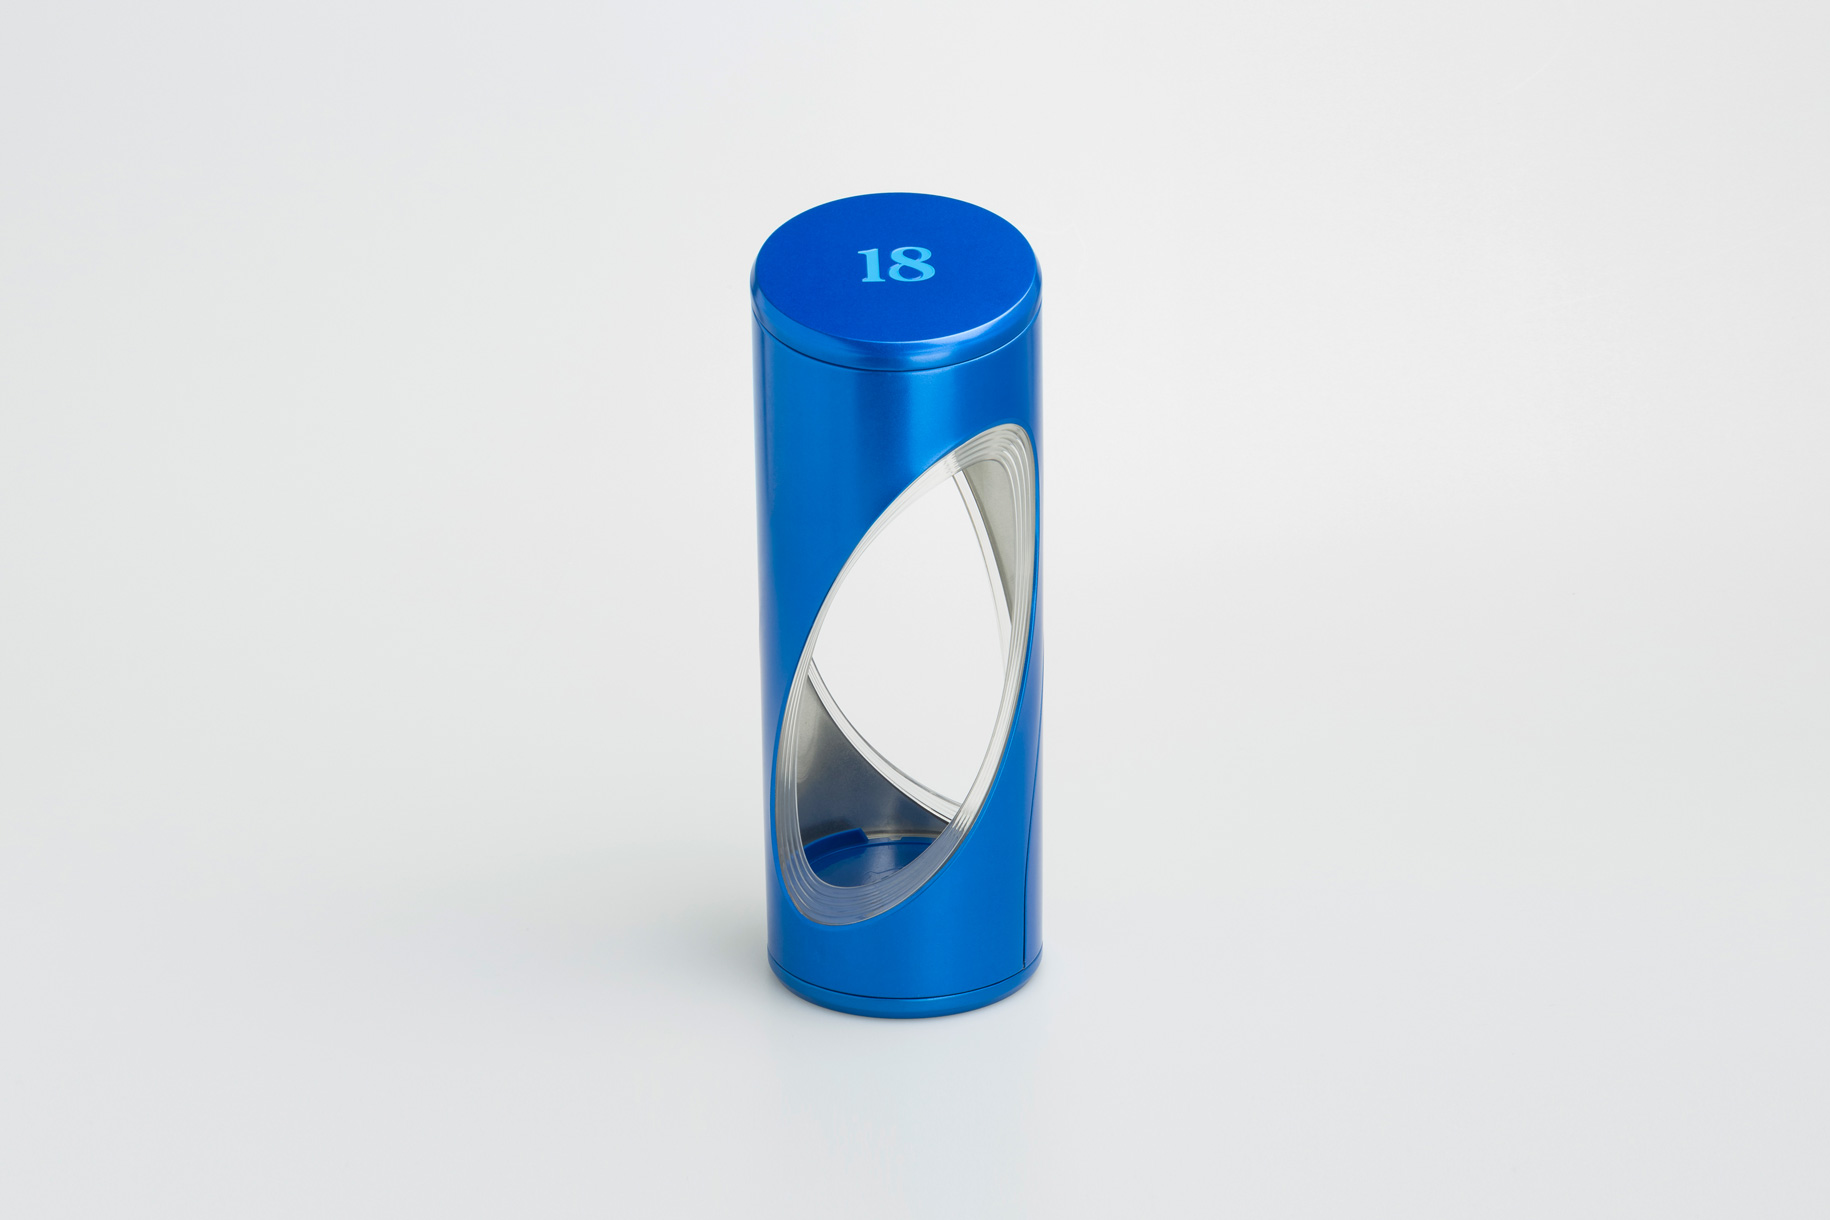 东莞市精丽制罐有限公司将亮相CIPPME上海国际包装展